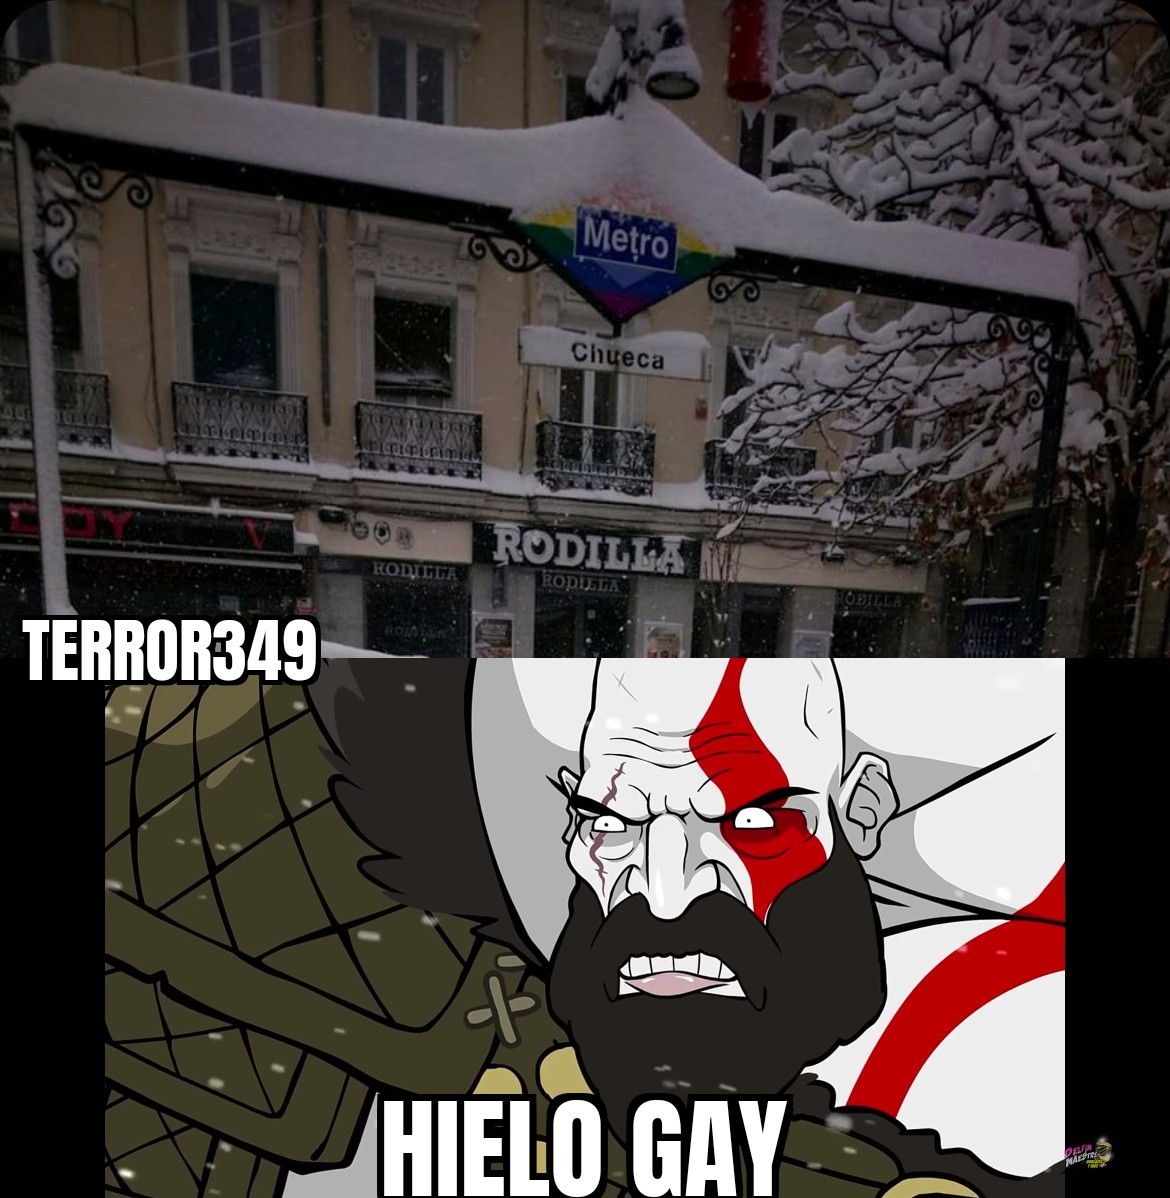 Nevó en un sitio gay y ahora es hielo gay - meme